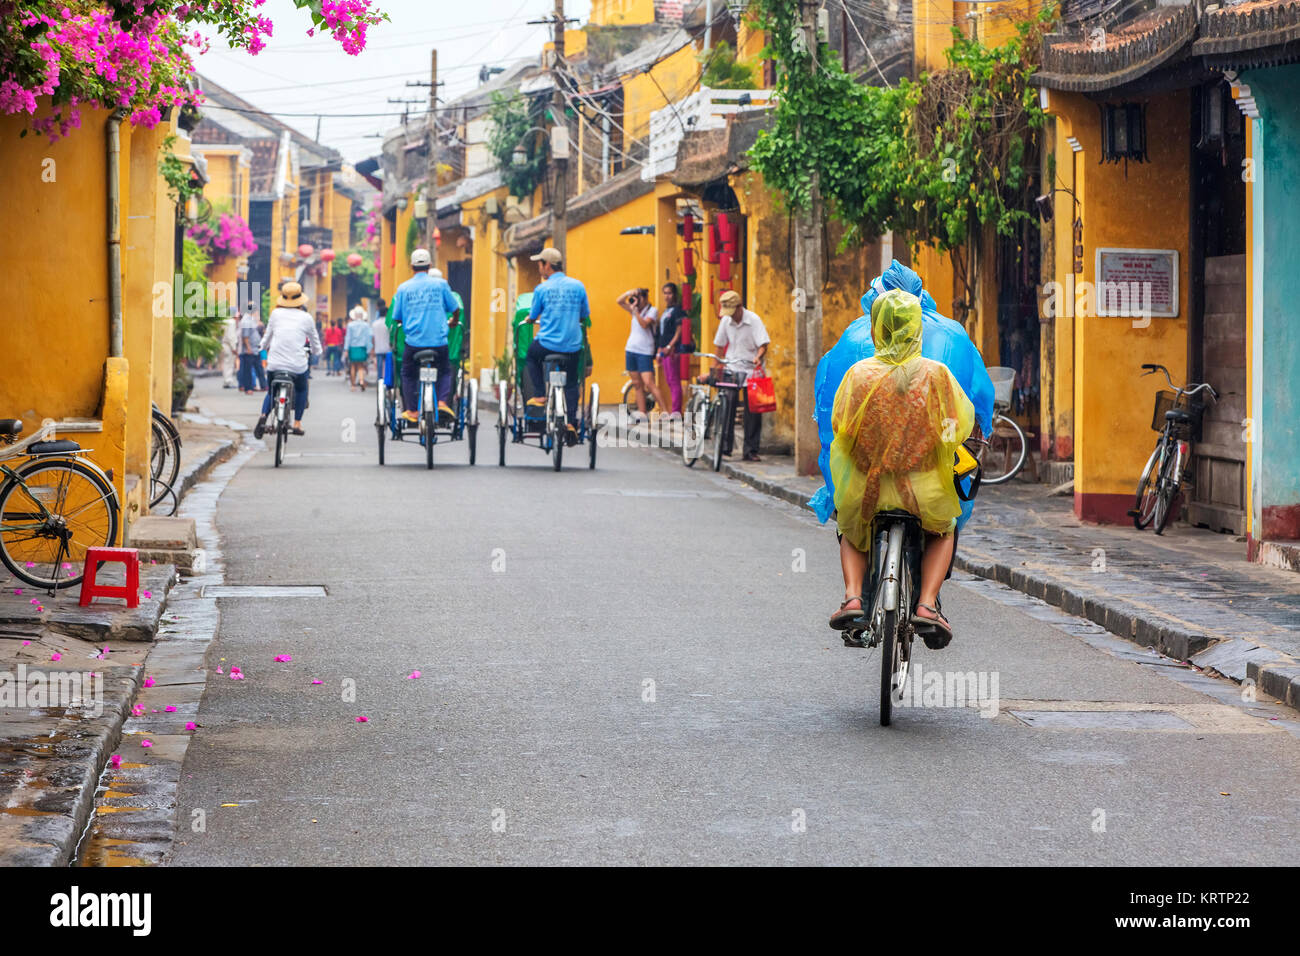 Image de haute qualité de l'image view pilote cyclo vélo sur une rue de la vieille ville d'Hoi An Banque D'Images